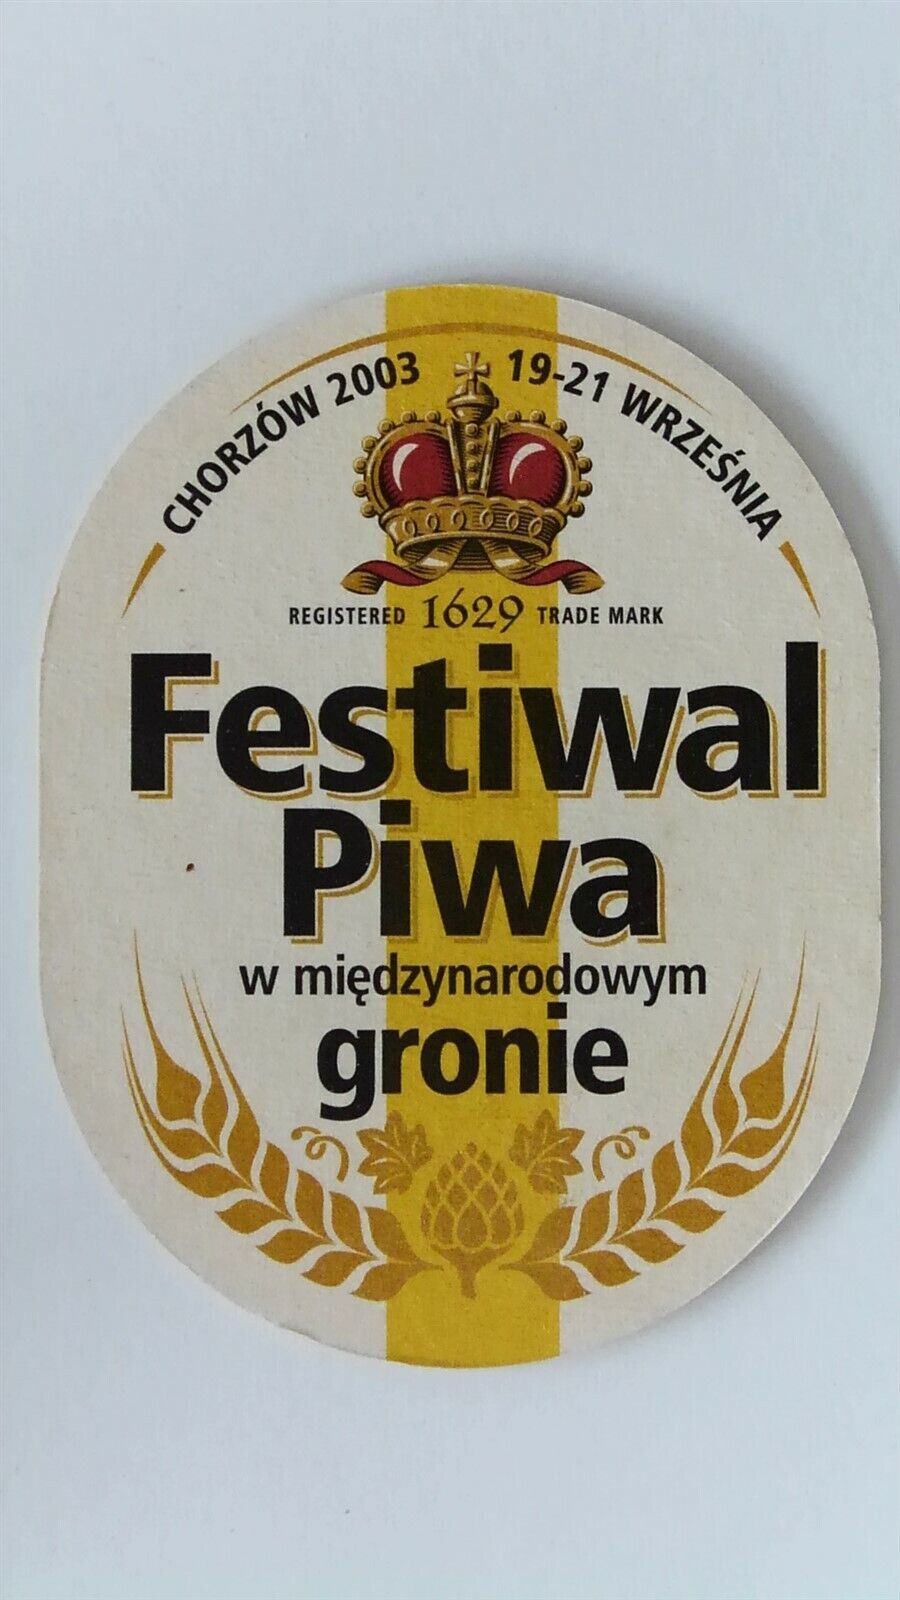 2003 Chorzow, Poland Festiwal Piwa Beer Festival Tyskie Beer Coaster